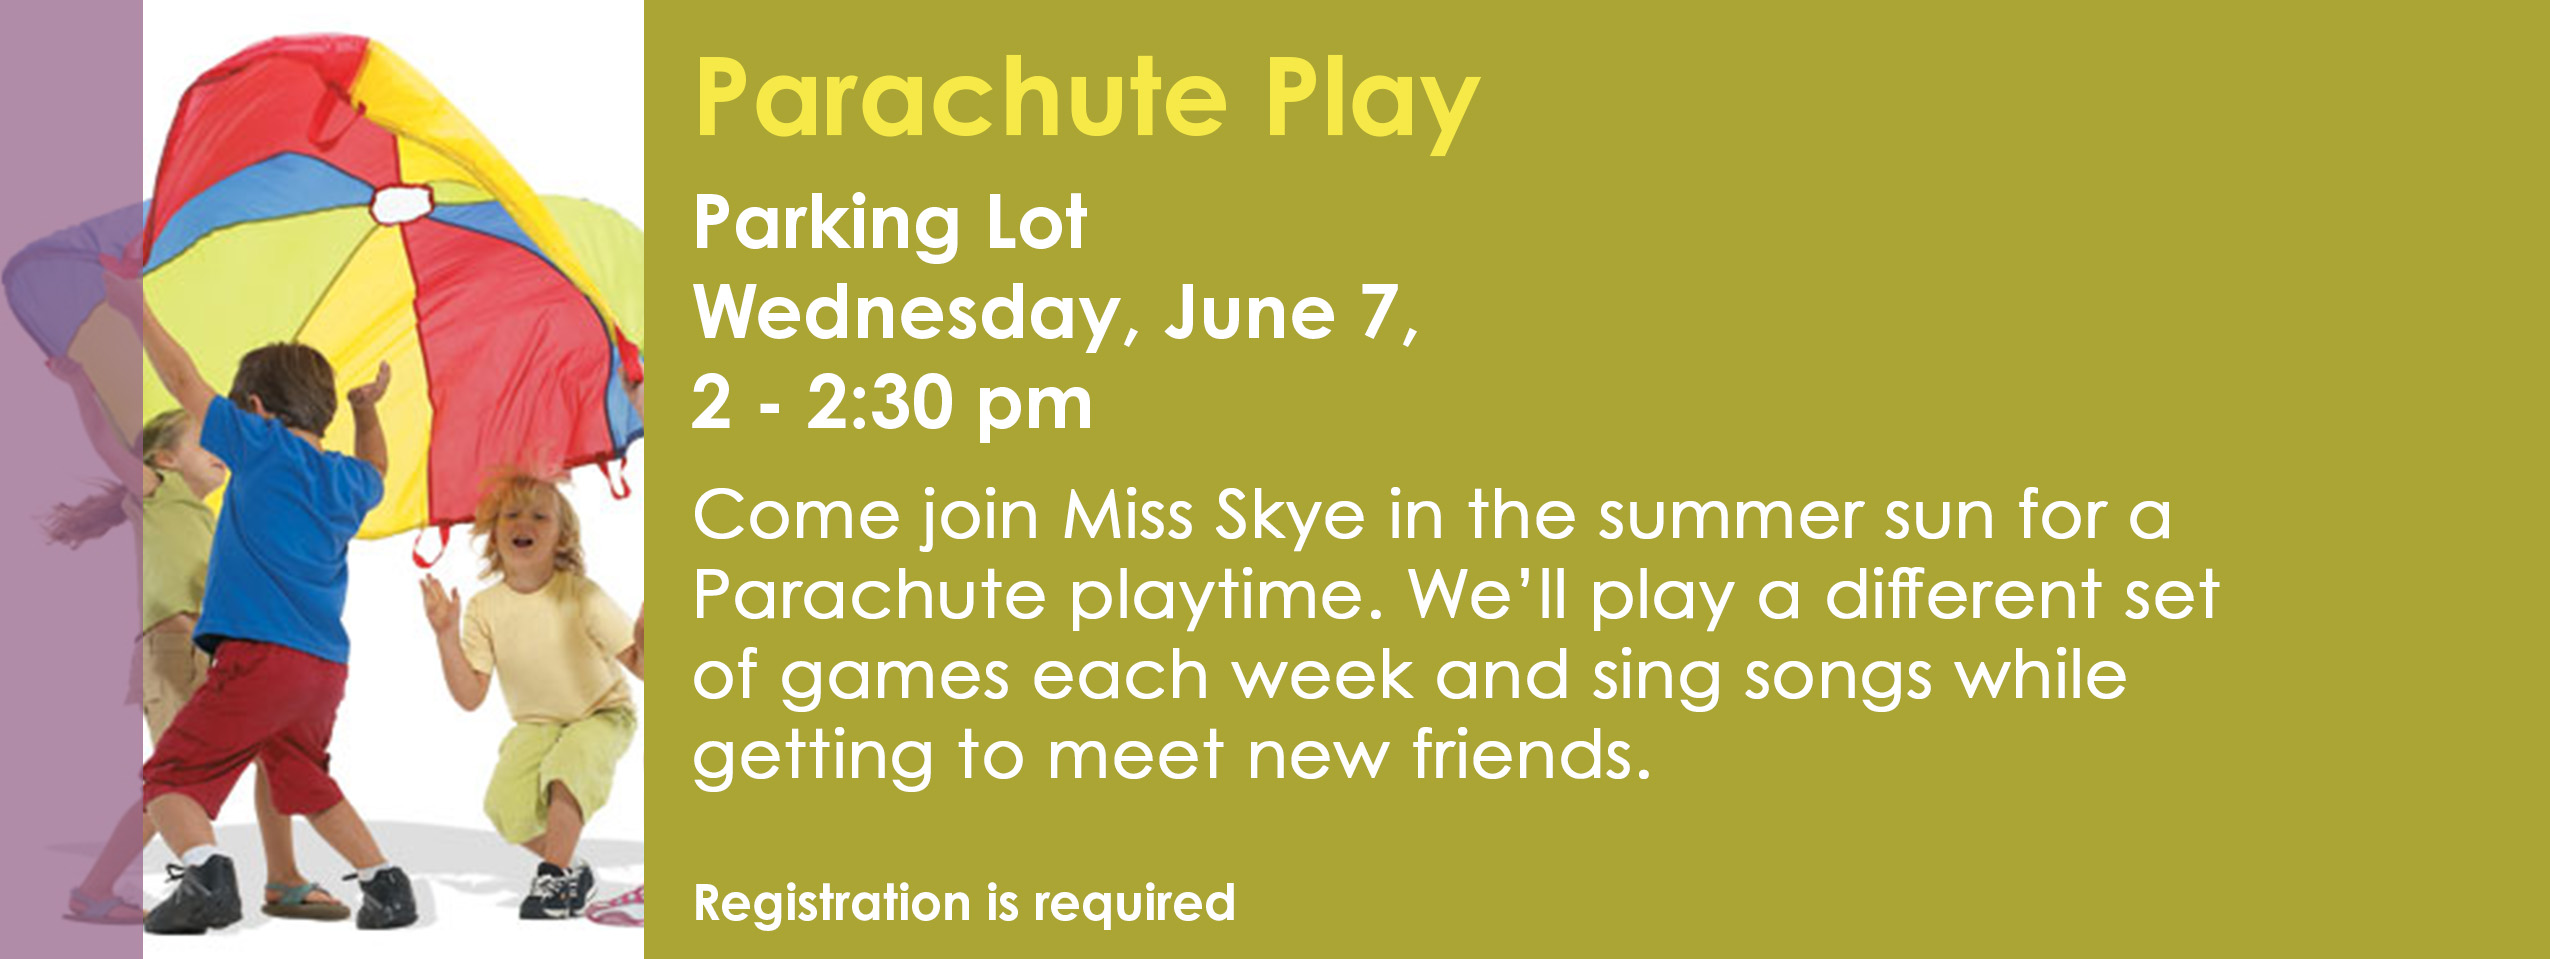 Parachute Play June 7